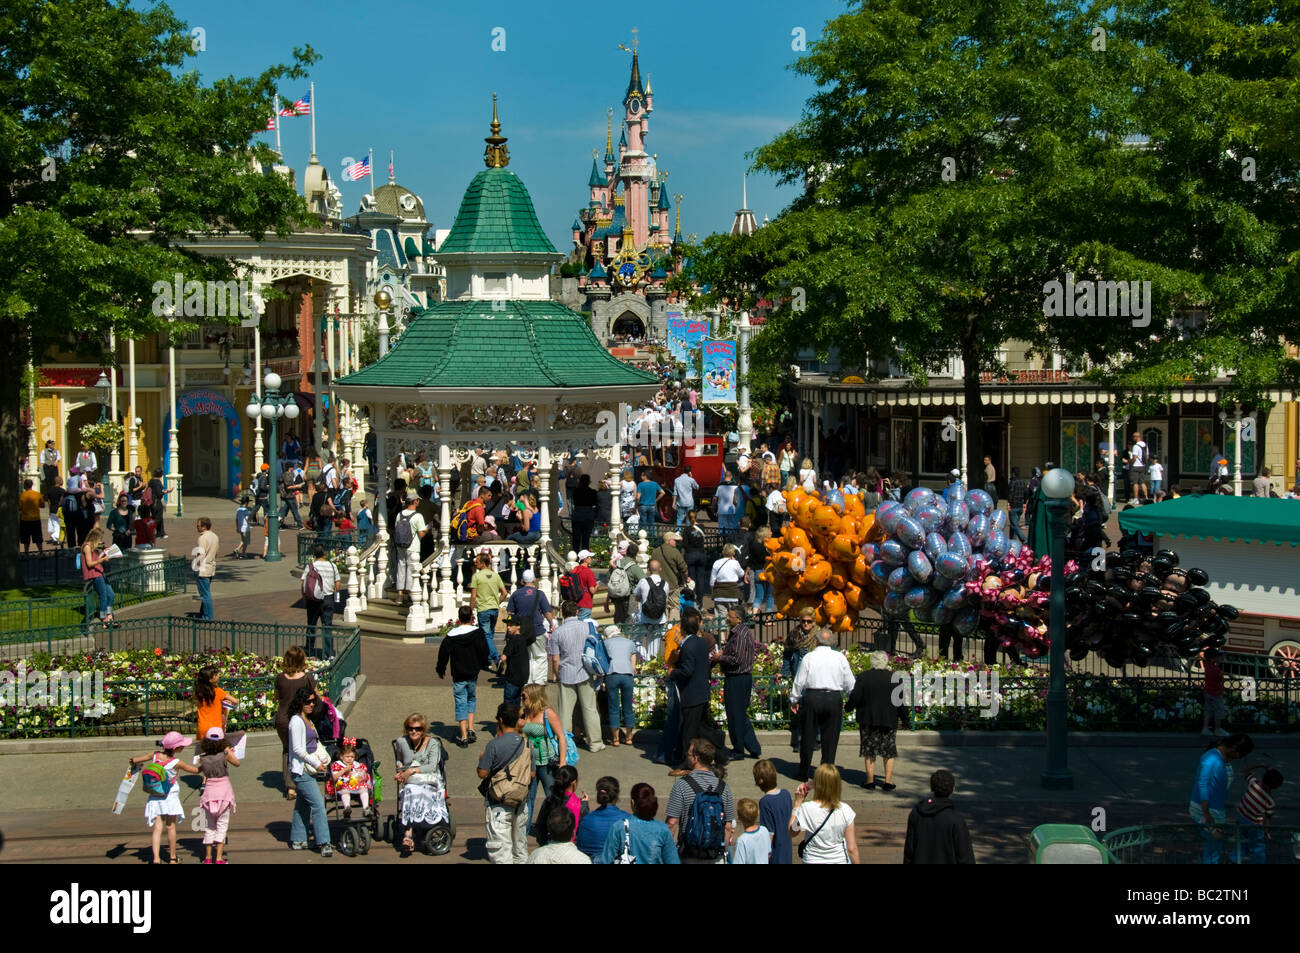 Francia, Parchi a tema, numerosa folla di persone che visitano Disneyland Paris, Panoramica generale, visita alla "Main Street USA" Attraction Foto Stock